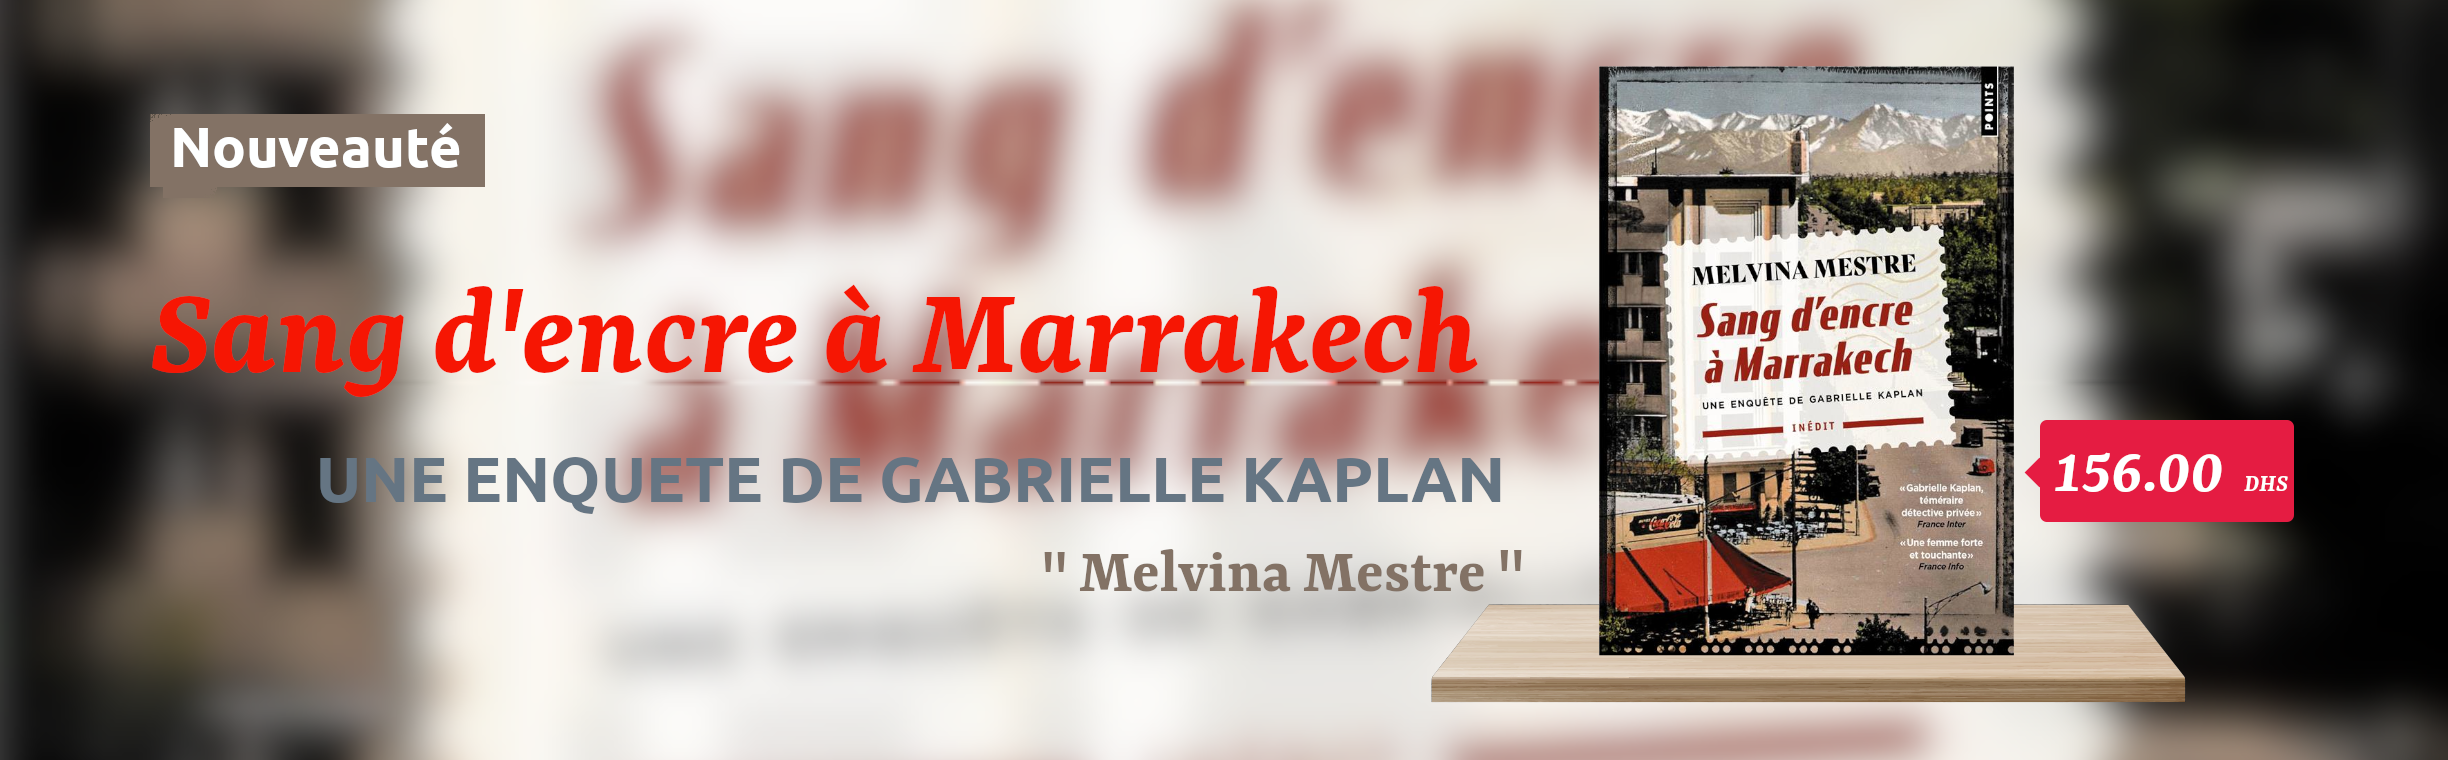 Sang d'encre à marrakech - Melvina Mestre